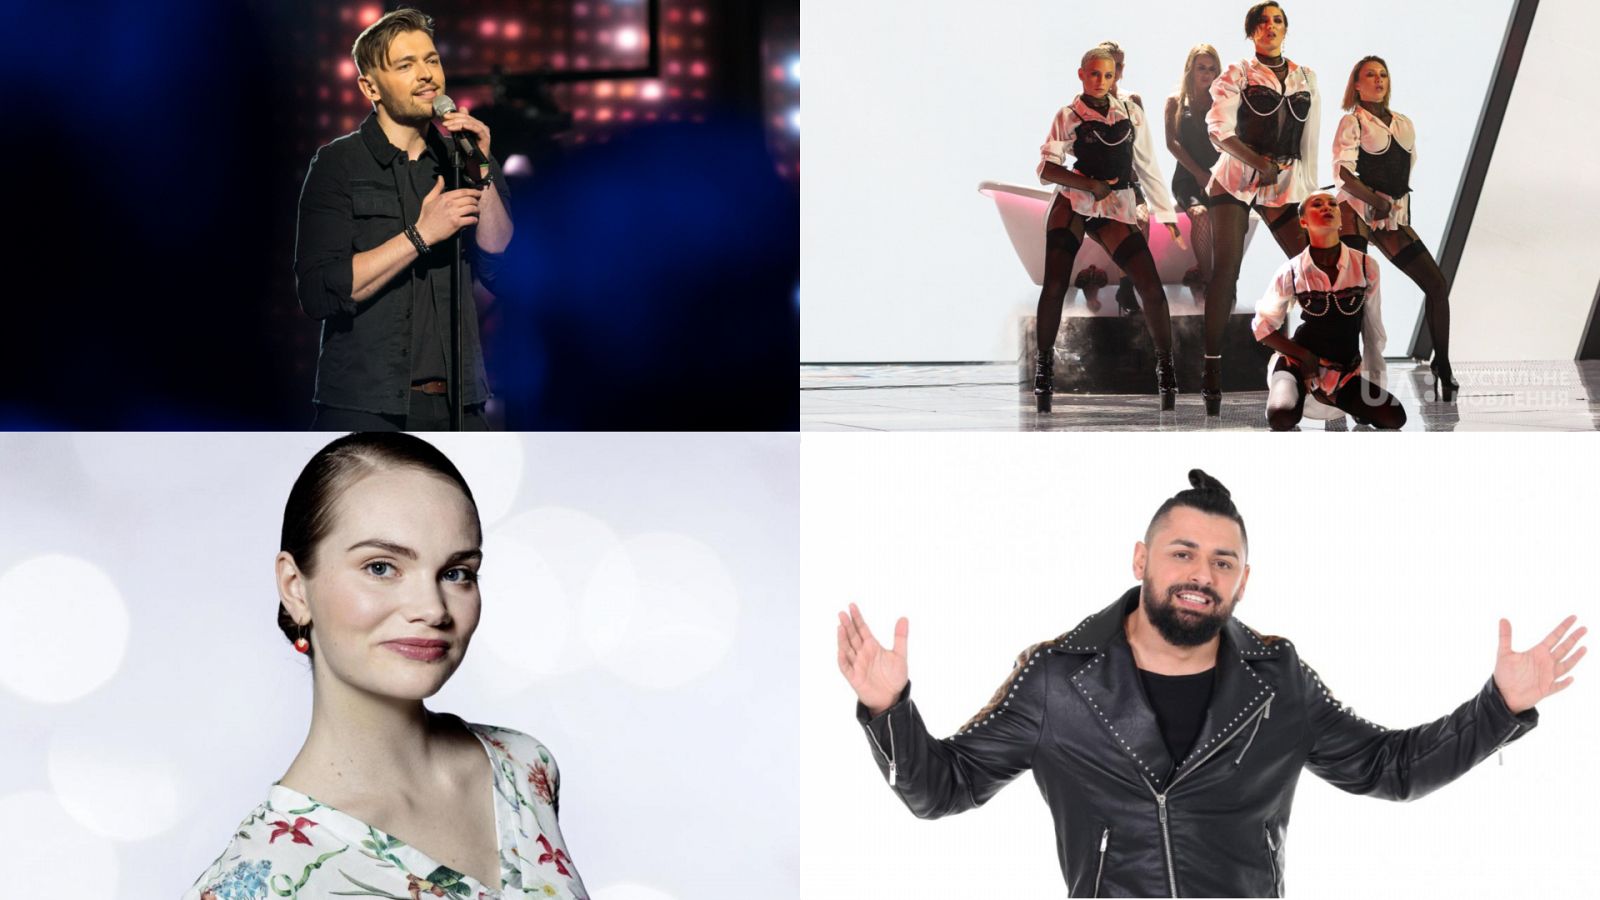 Dinamarca, Hungría, Lituania y Ucrania eligen a sus representantes para Eurovisión 2019